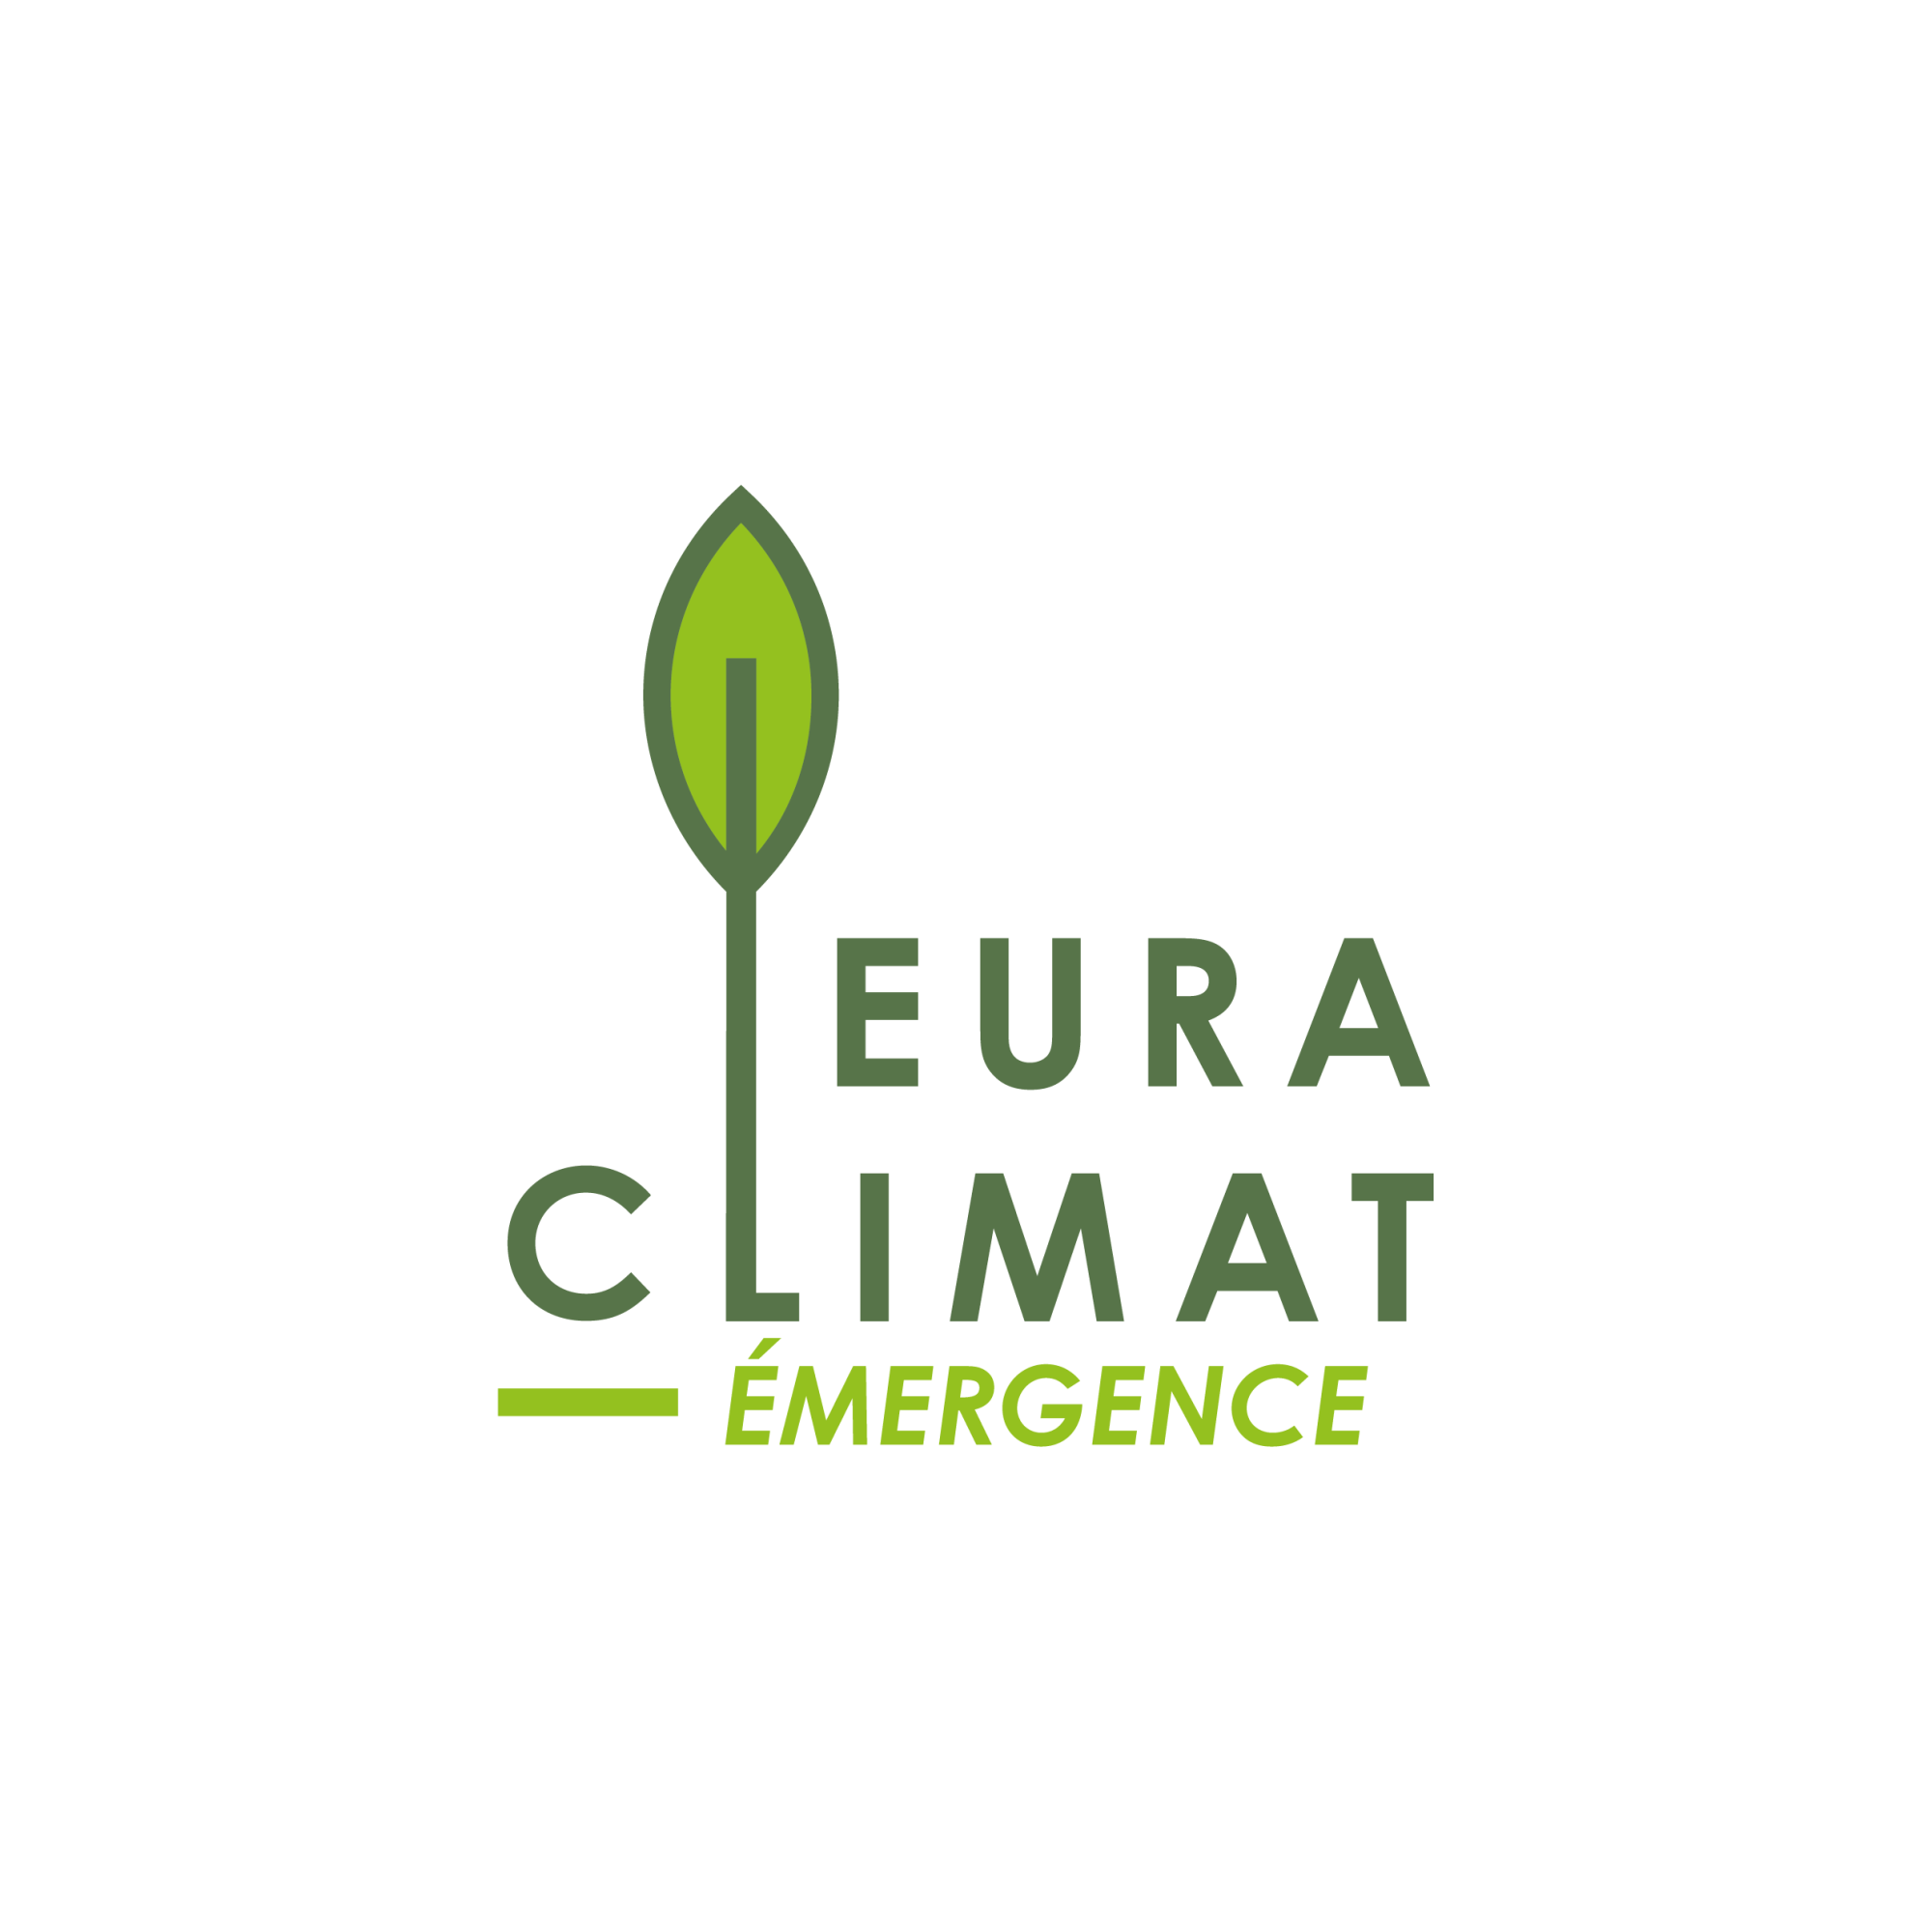 Label Emergence EuraClimat